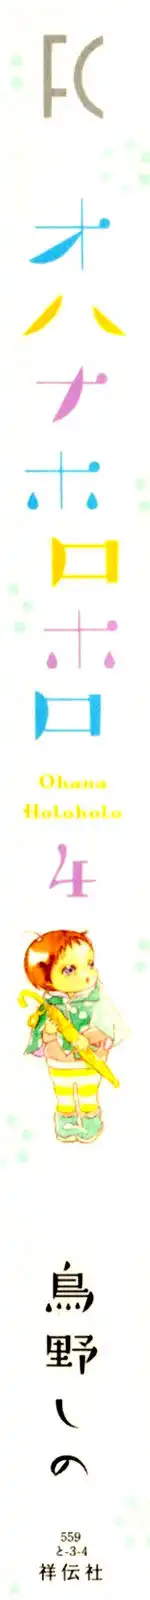 Ohana Holoholo Chapter 20